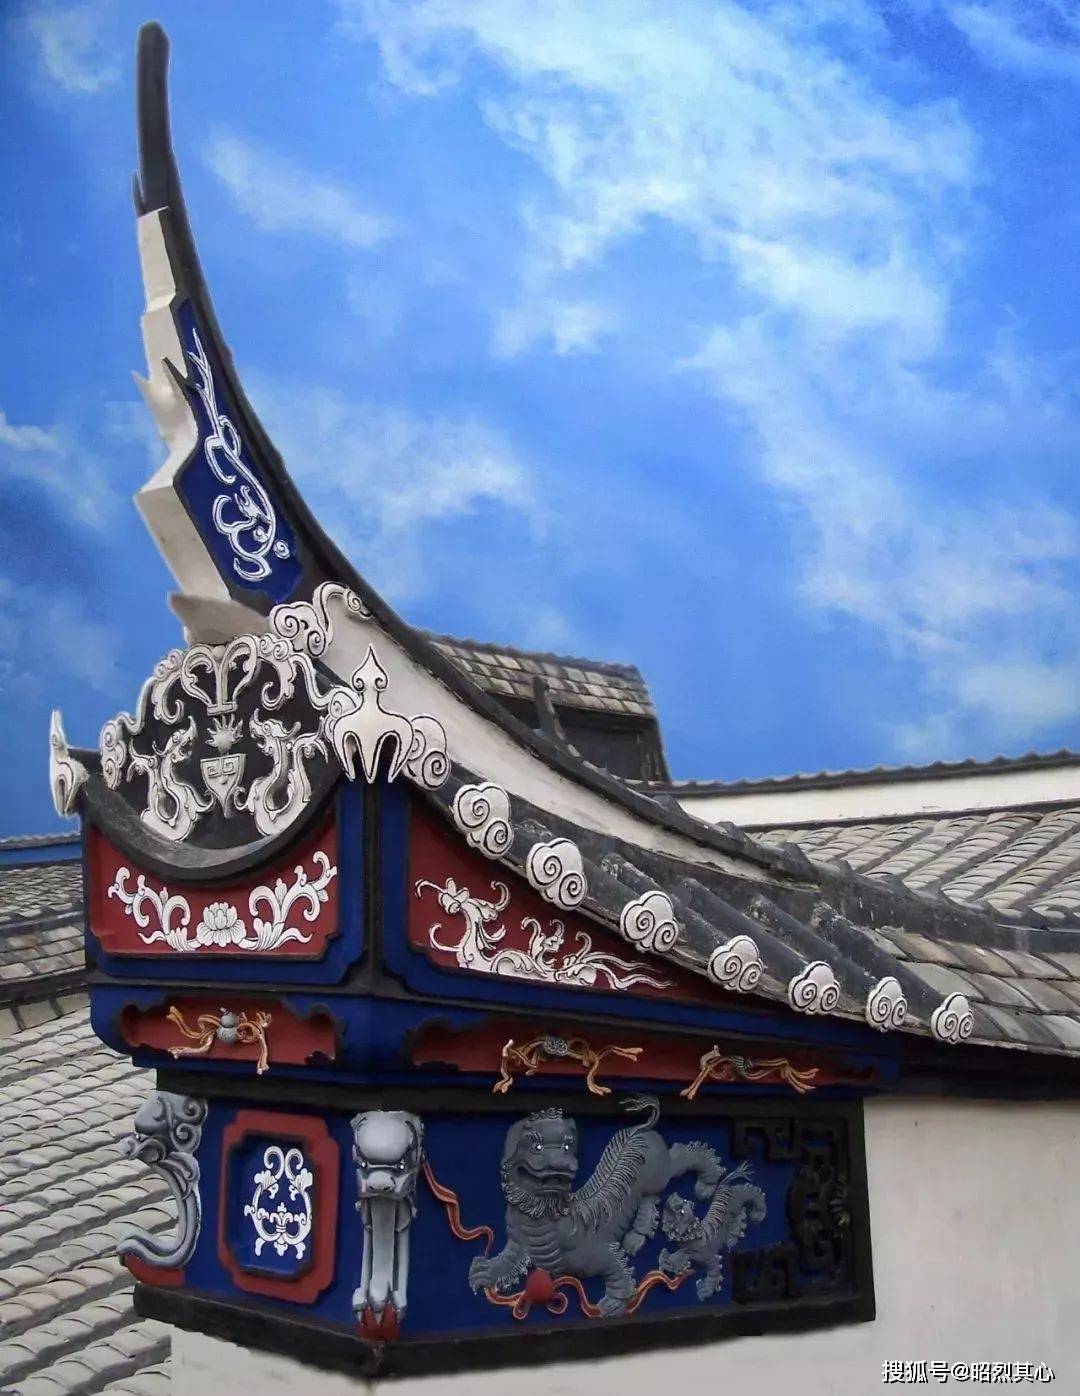 白墙黛瓦,曲线山墙,飞檐翘角,是福州古厝特色鲜明的形式与美感,也是闽